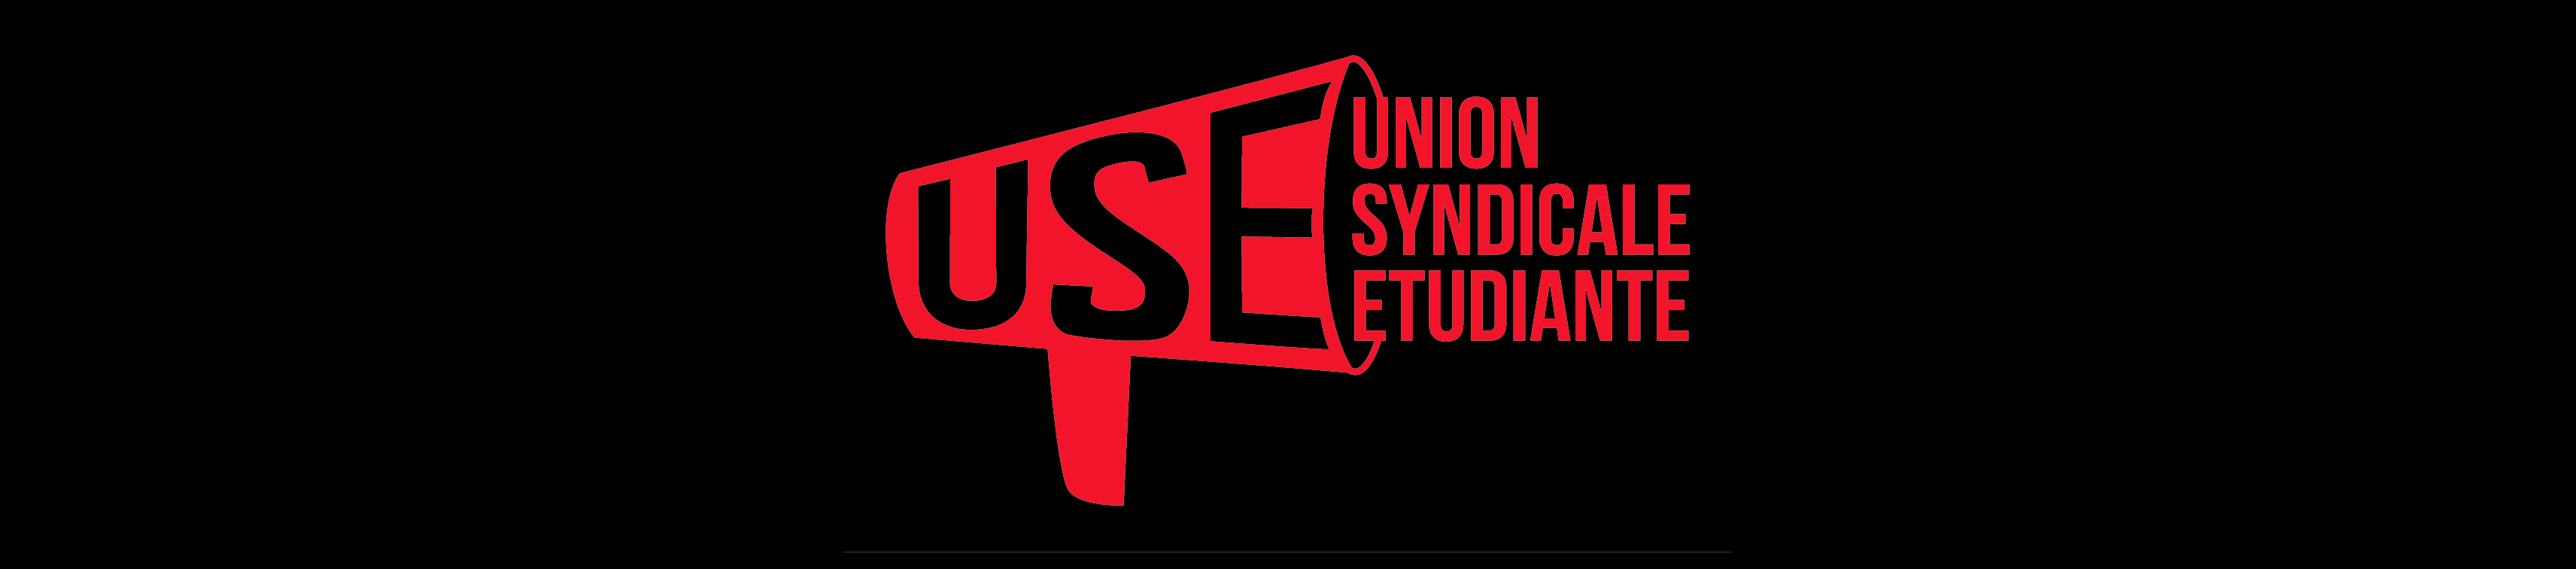 Union syndicale étudiante